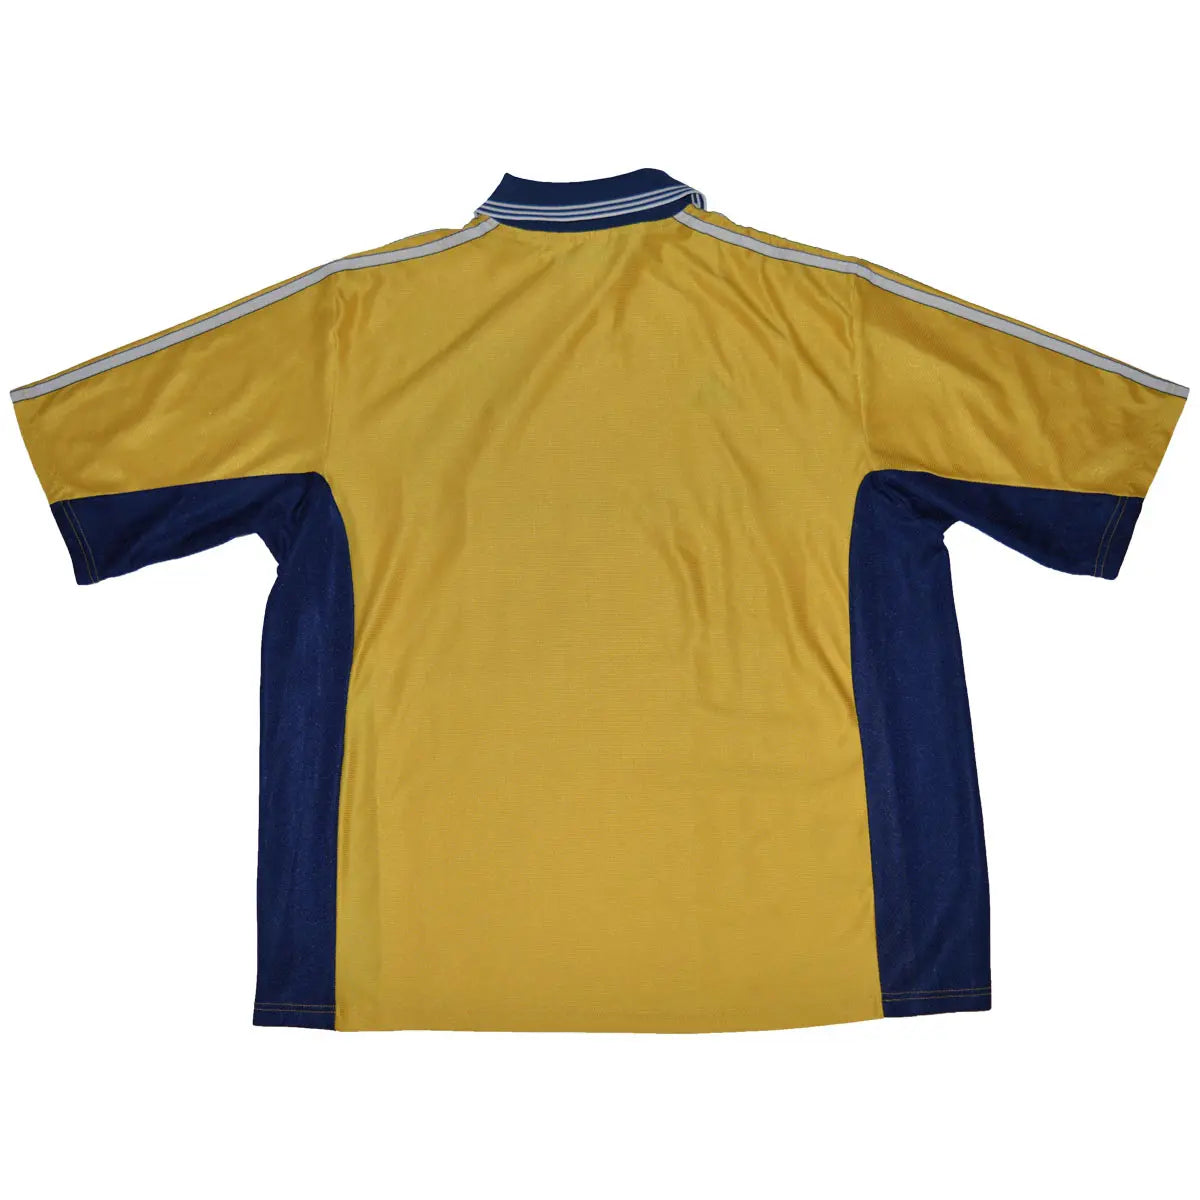 Maillot de foot rétro/vintage authentique jaune et bleu adidas Olympique de Marseille troisième maillot centenaire 1998-1999 de dos